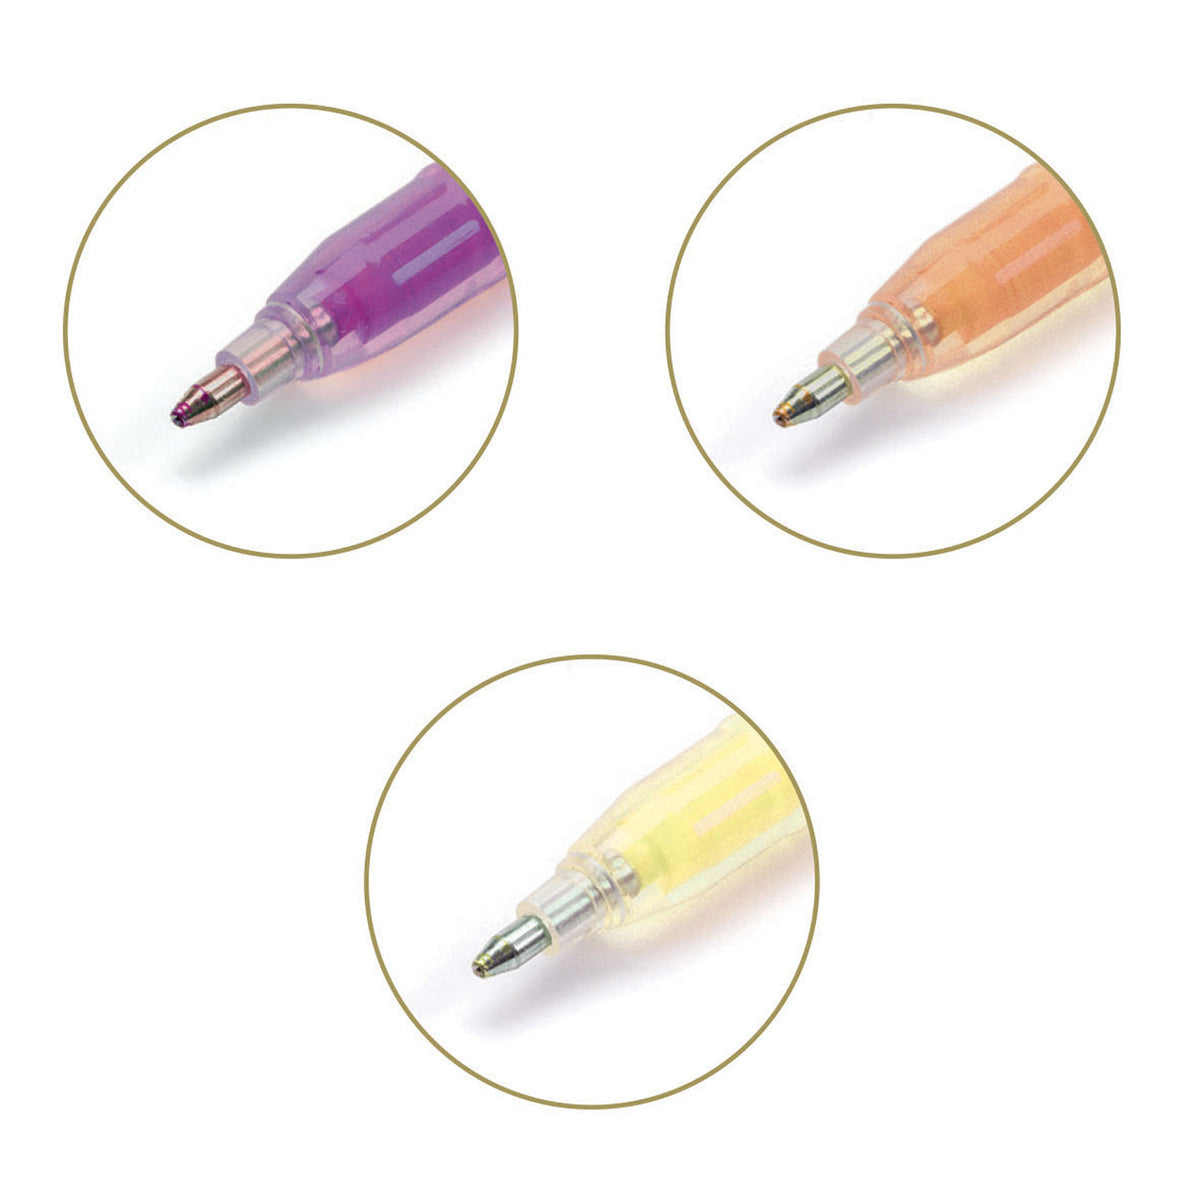 Diese Pastell Gel Stifte ändern beim Schreiben die Farbe  Inhalt: 6 Gelstifte mit 6 Farben pro Stift (gelb, orange, lila, grün, blau und rosa). Transparentes Etui. Durchsichtiges Gehäuse, um den Tintenstand zu sehen. Der gleichmäßige Fluss der Geltinte sorgt für eine gestochen scharfe, klare Schrift Maße Verpackung: 7,2 x 15,2 x 1,6 cm